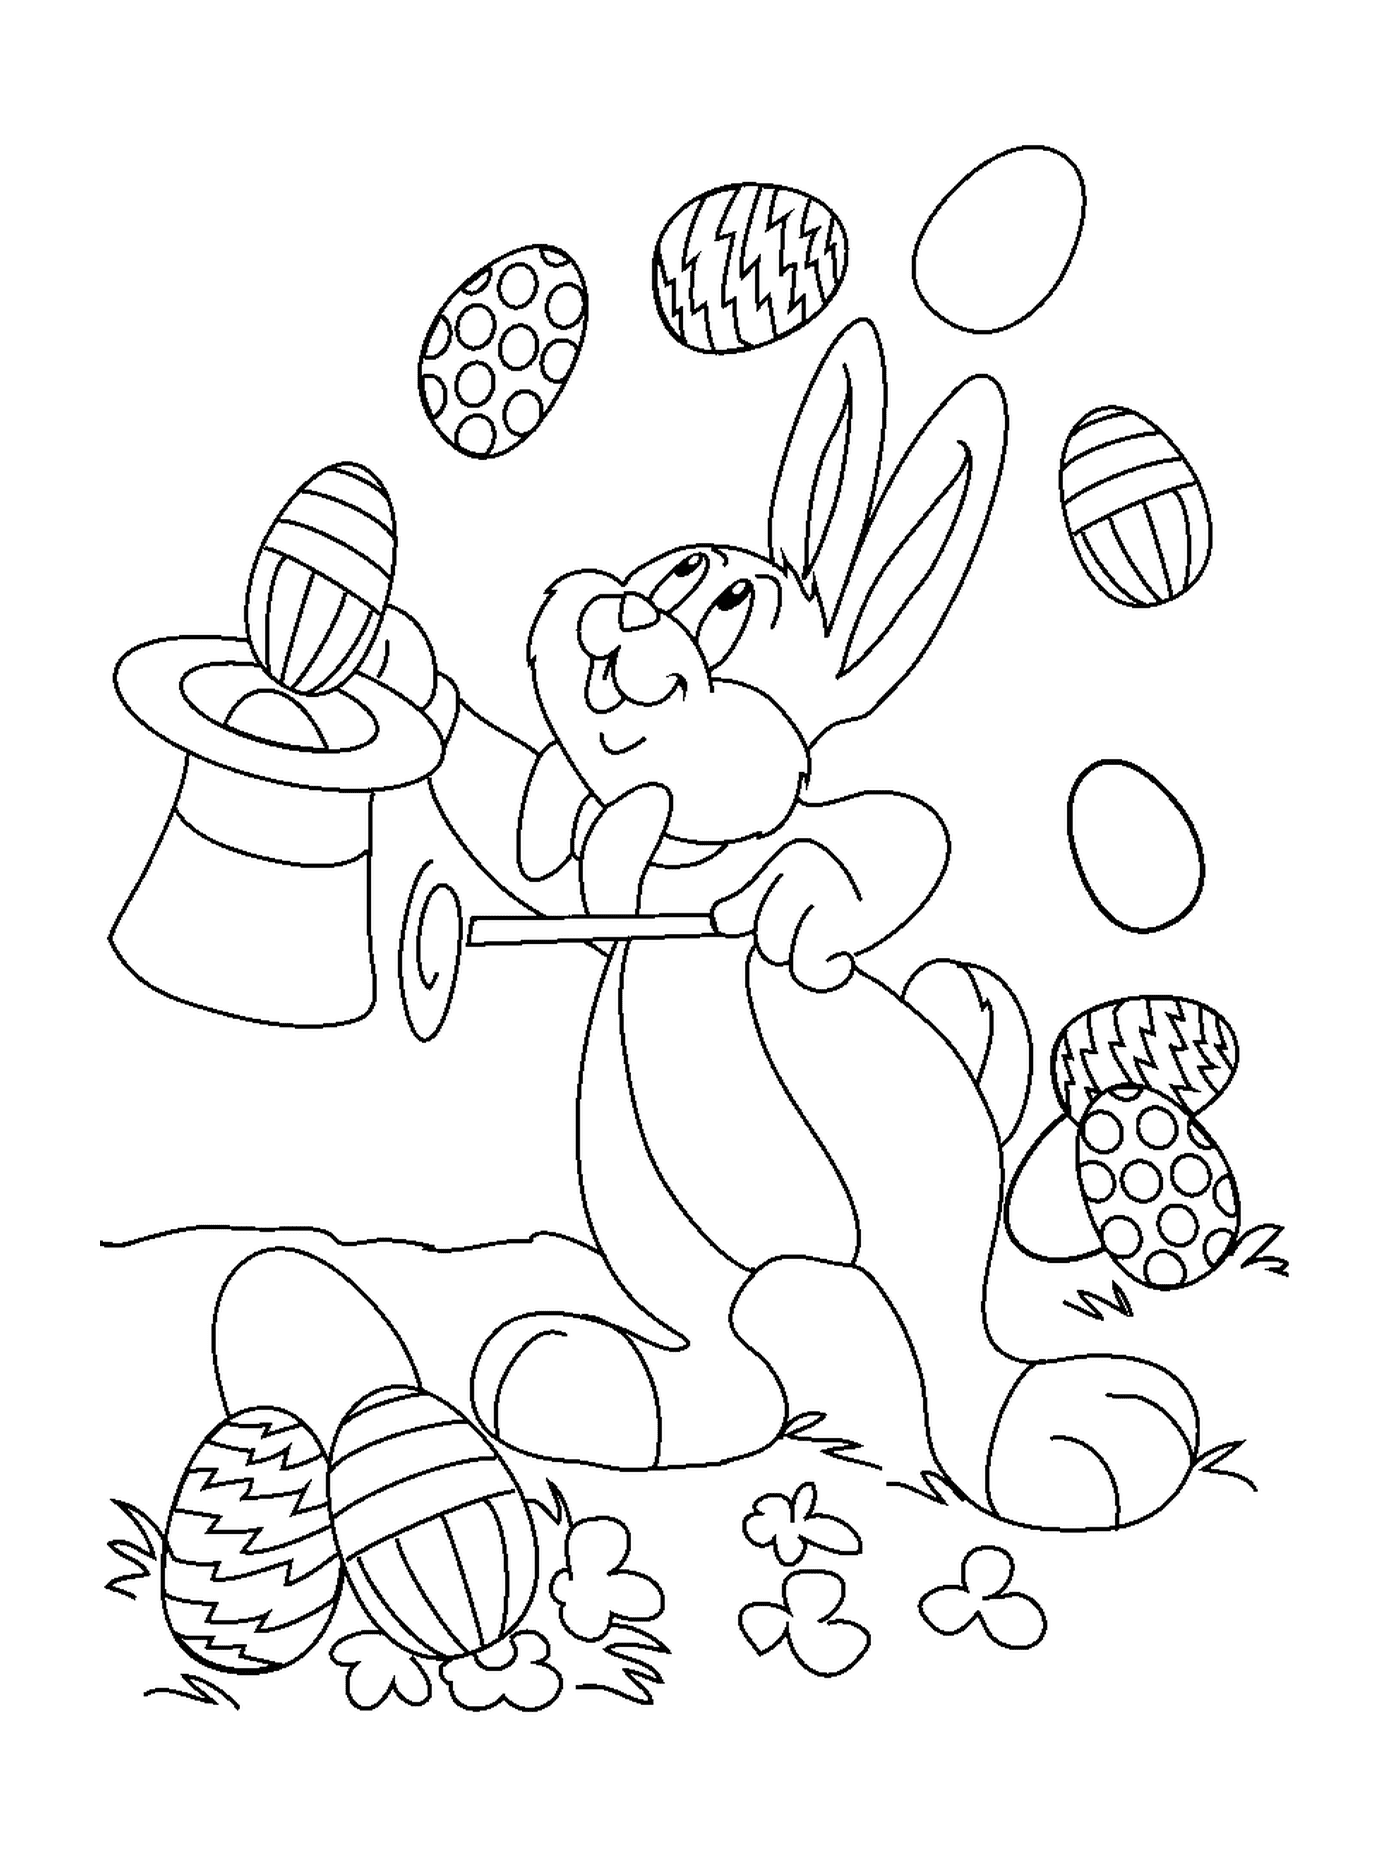  Un conejo de Pascua jugando con huevos 